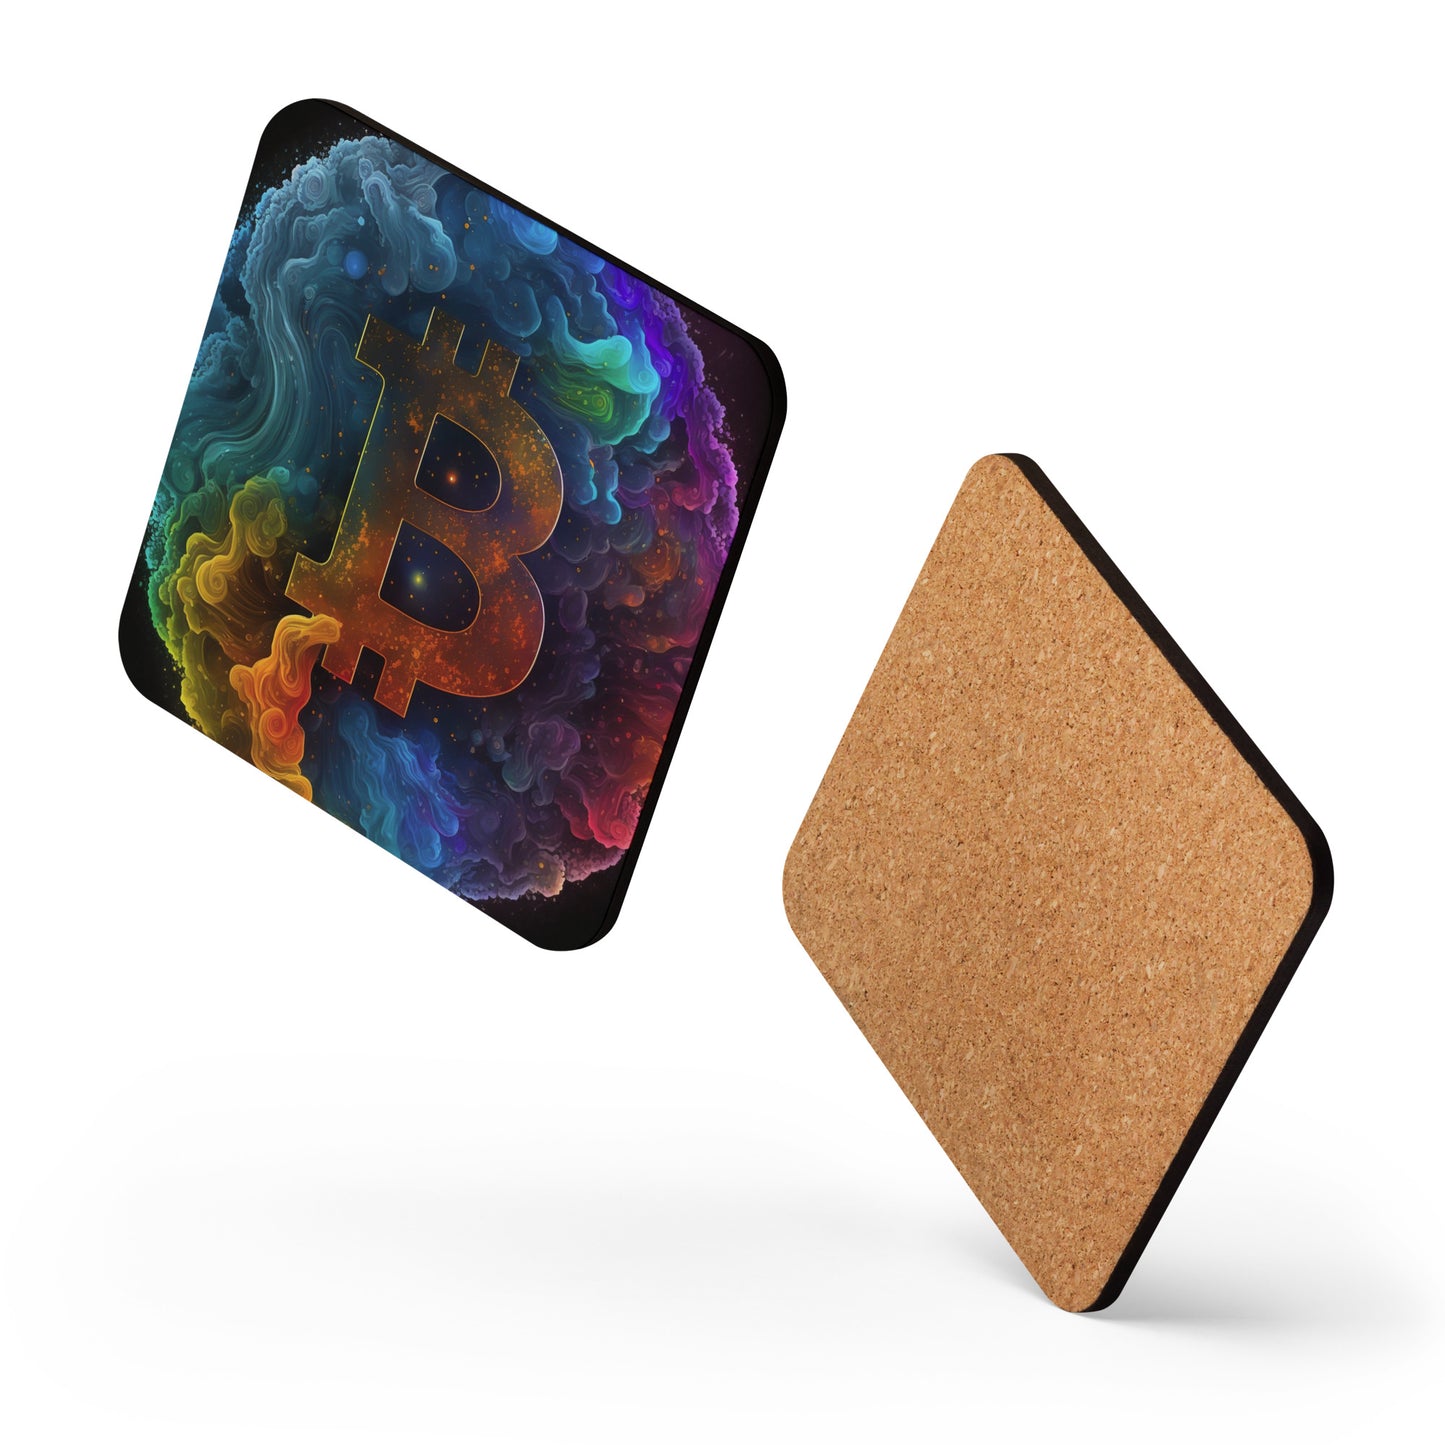 Bitcoin Color Cork-back Coaster